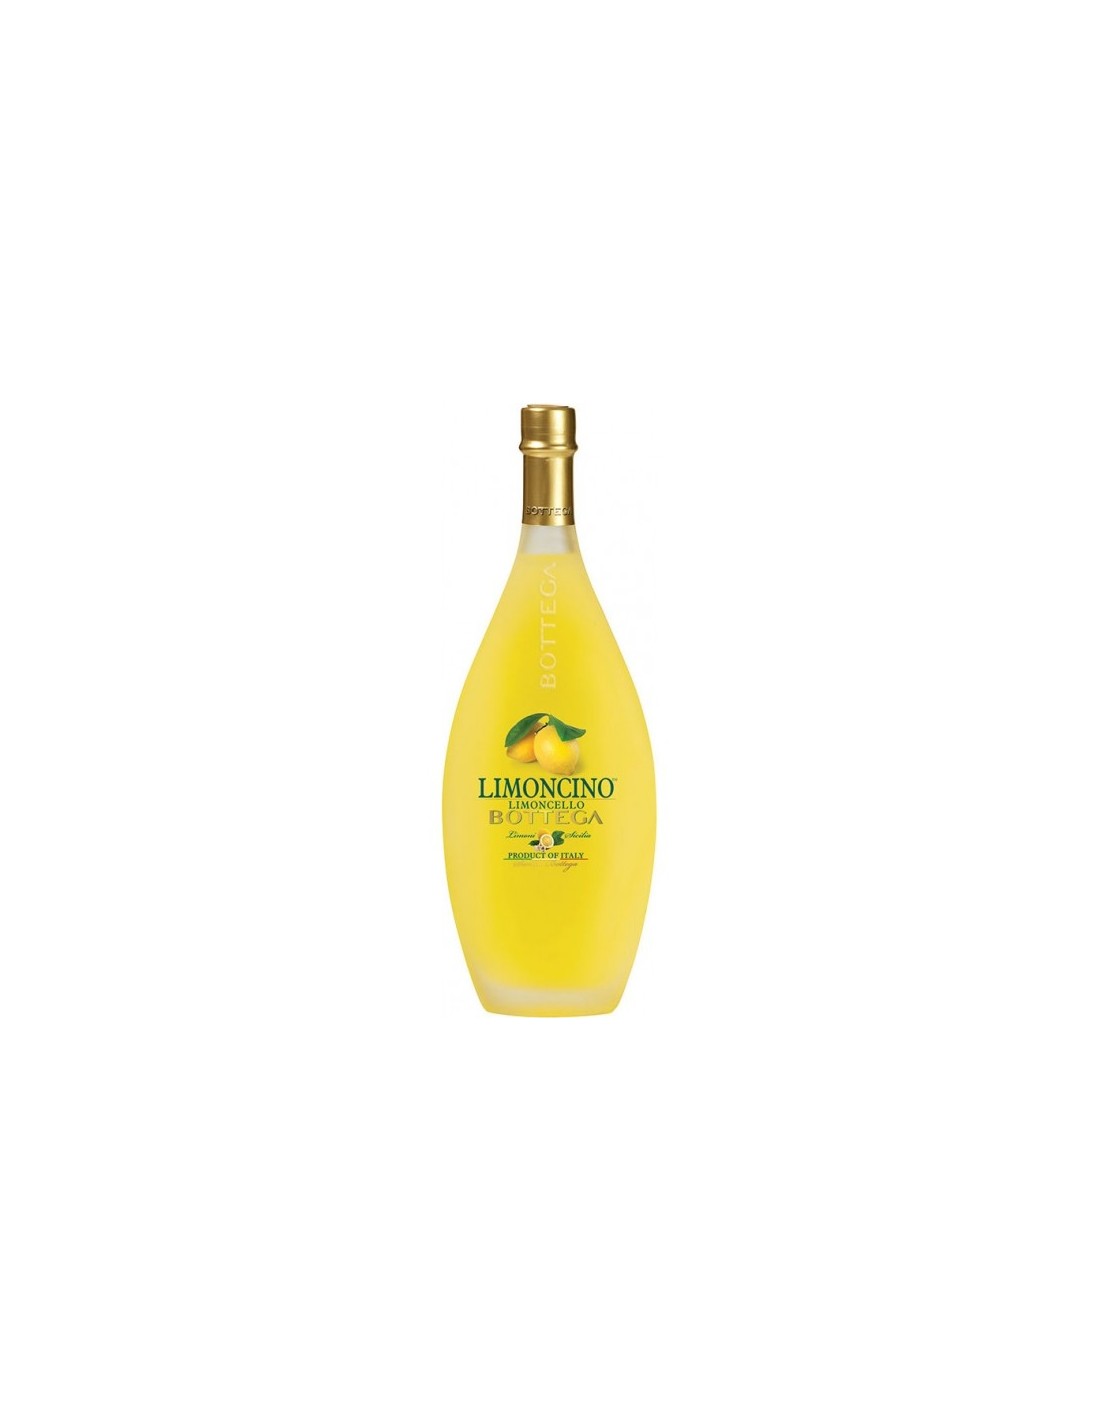 Lichior Limoncino Bottega 30% alc., 0.5L, Italia alcooldiscount.ro